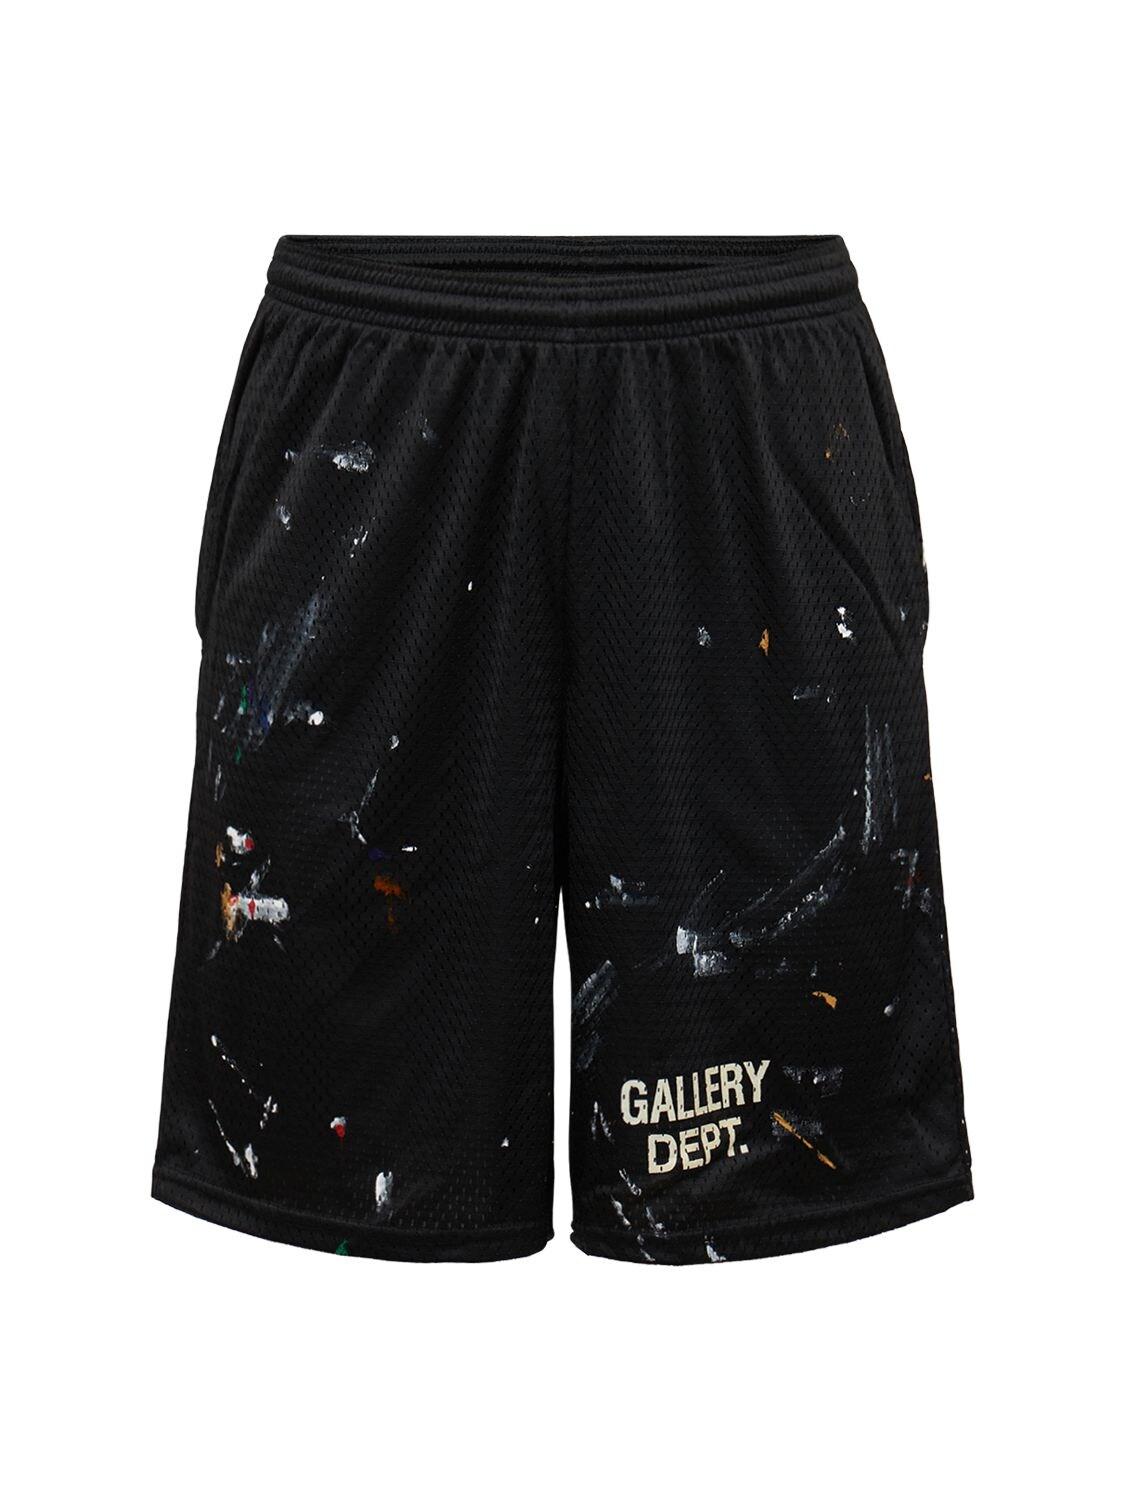 らのスタイ】 Gallery Dept Studio Gym Paint Shortsの通販 by 村松's 